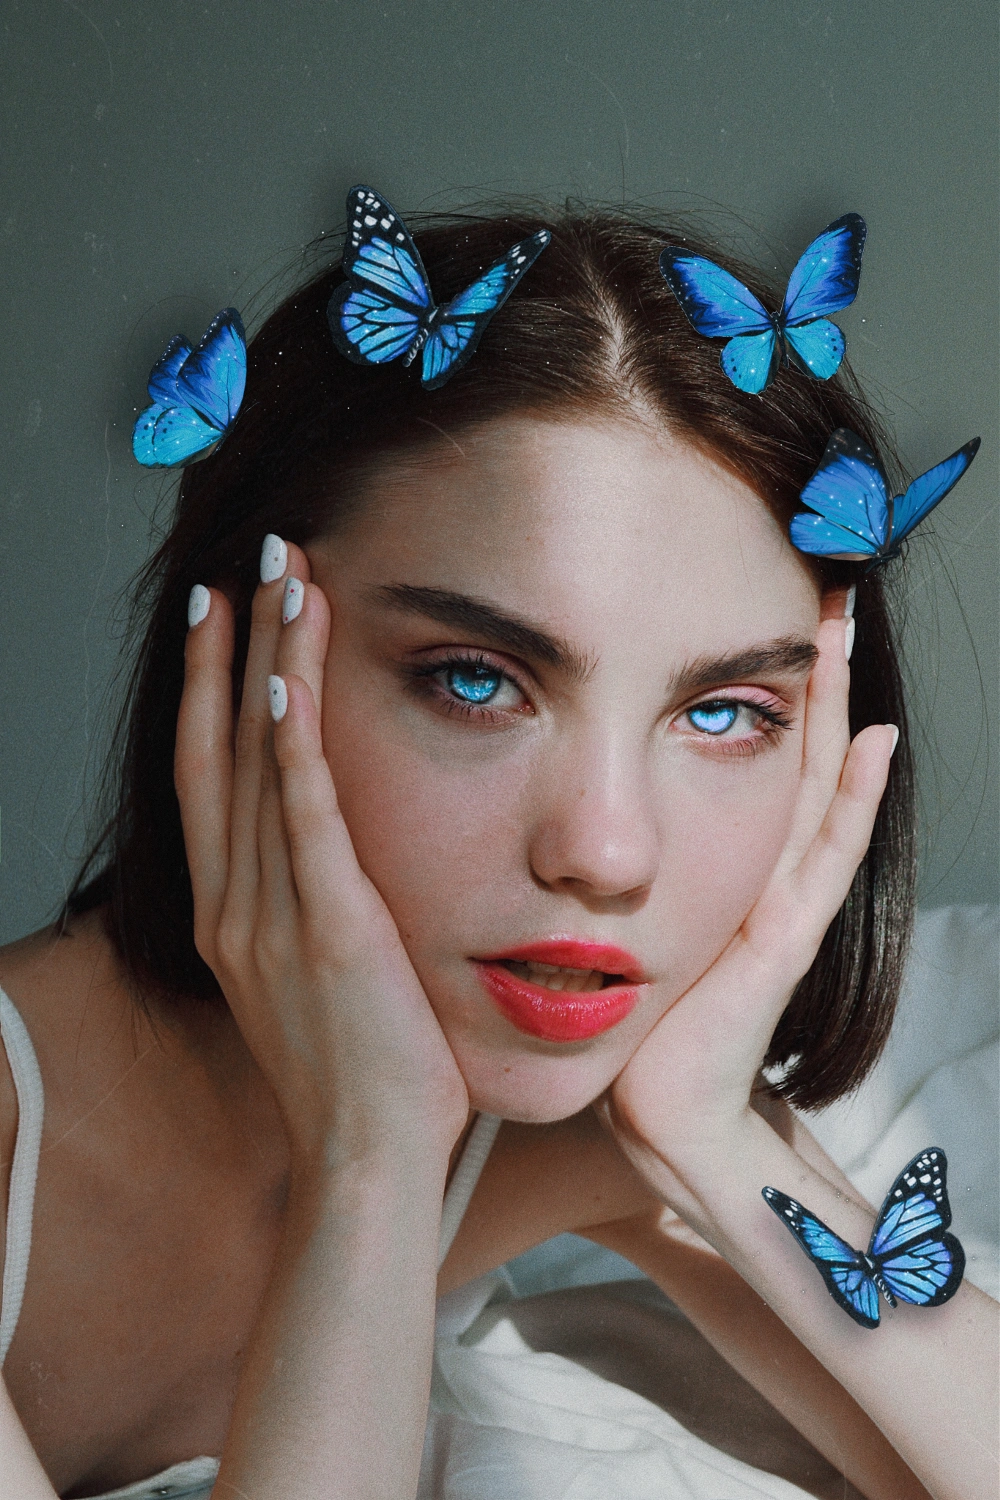 🦋🦋🦋

-
-
-
-
-
-
-
-
#girl #woman #butterfly #blue